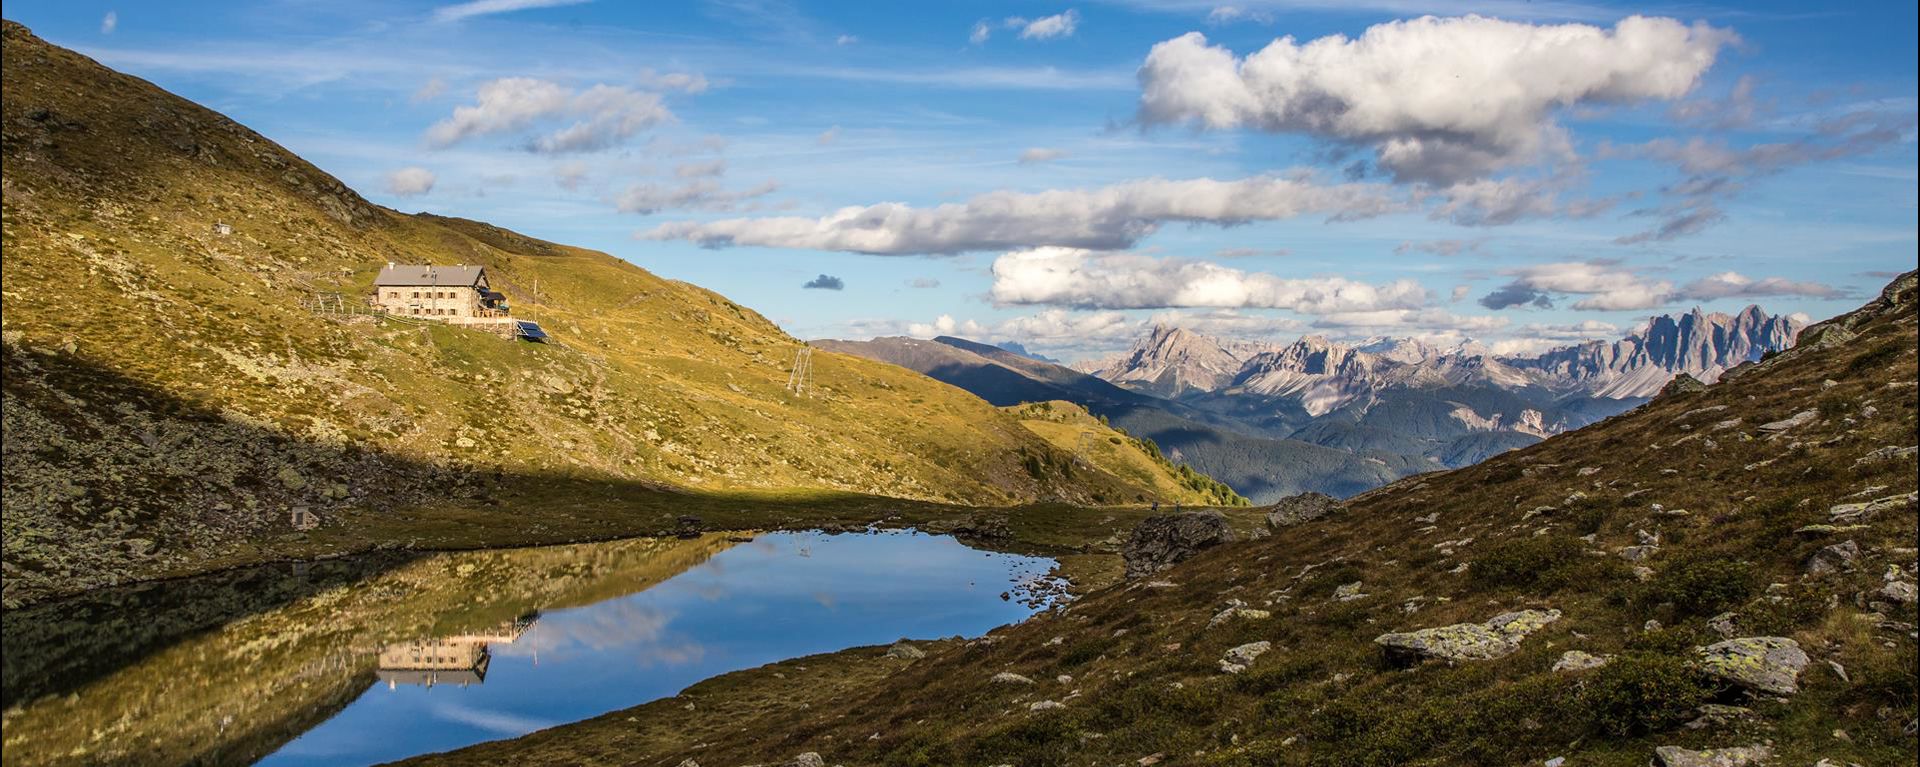 Il Lago di Rodella sull'Alpe di Velturno